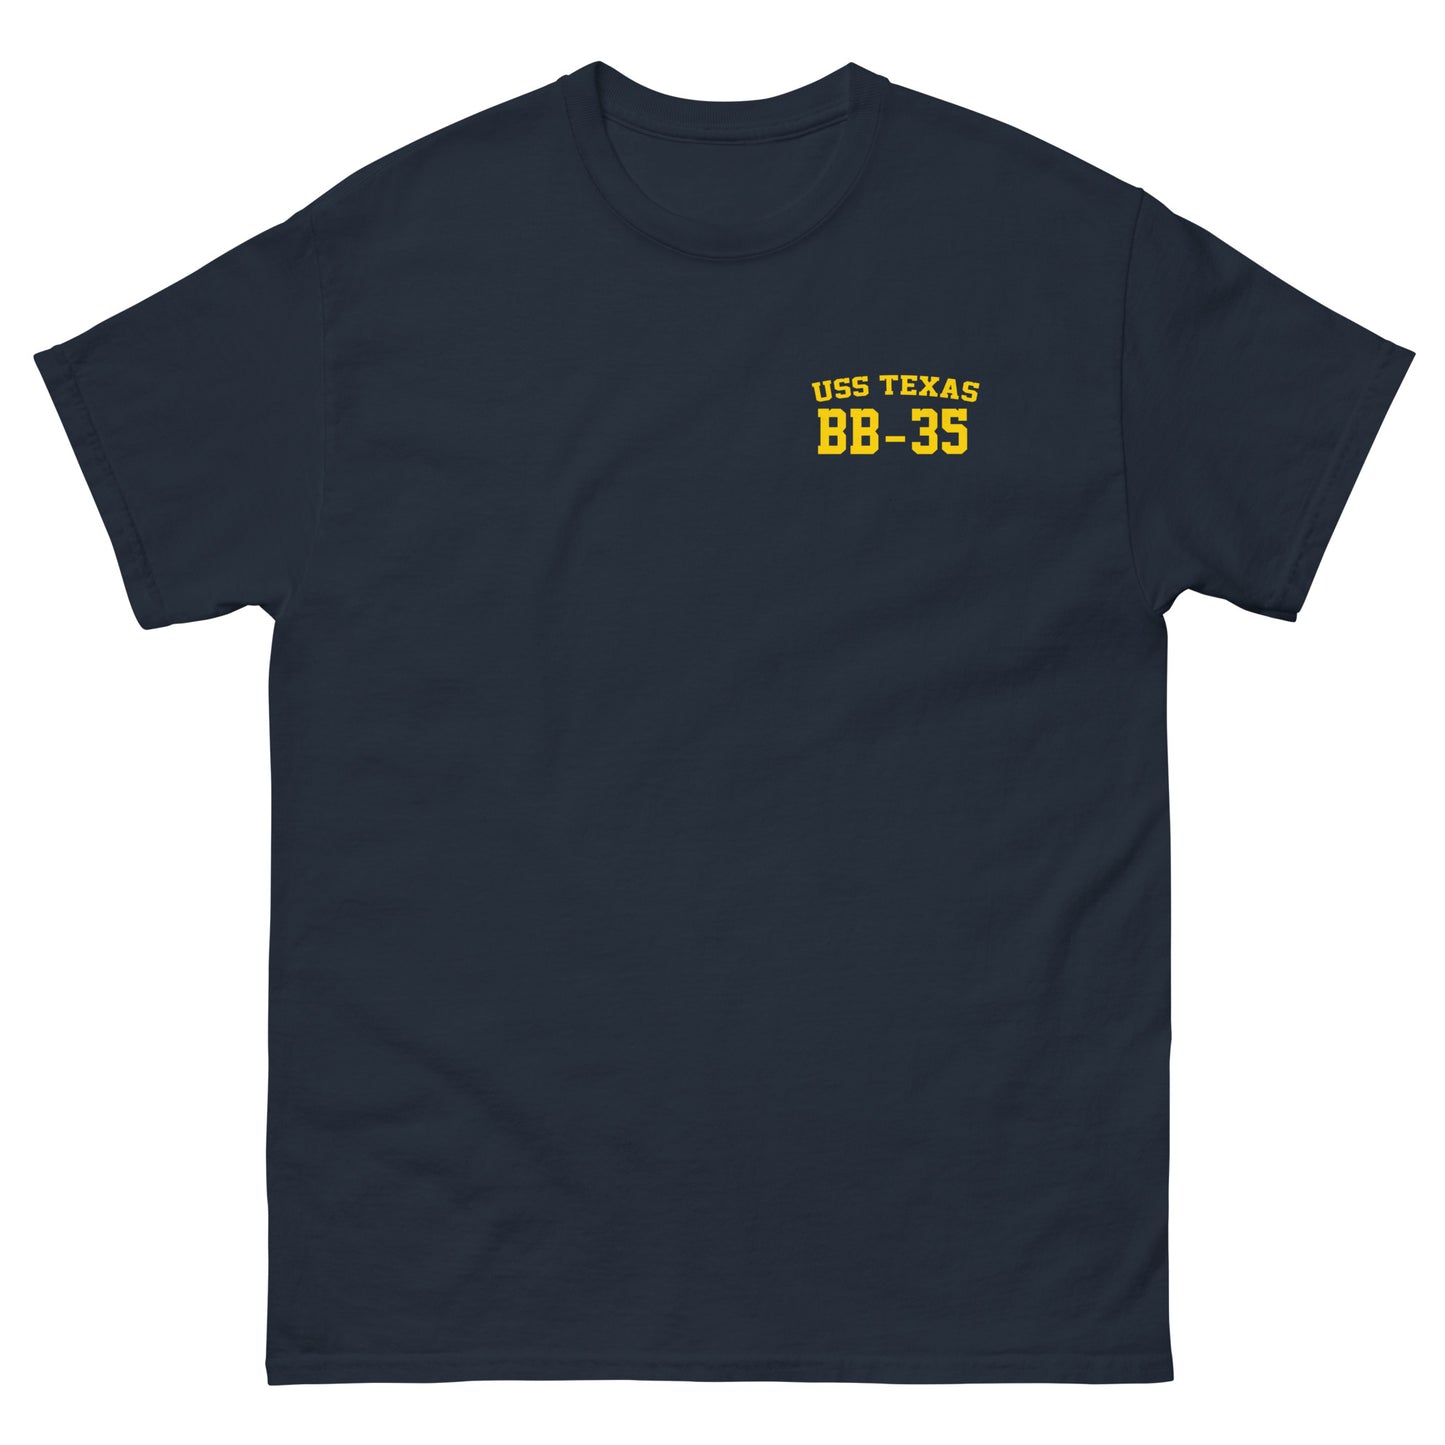 USS TEXAS (BB-35) Shirt